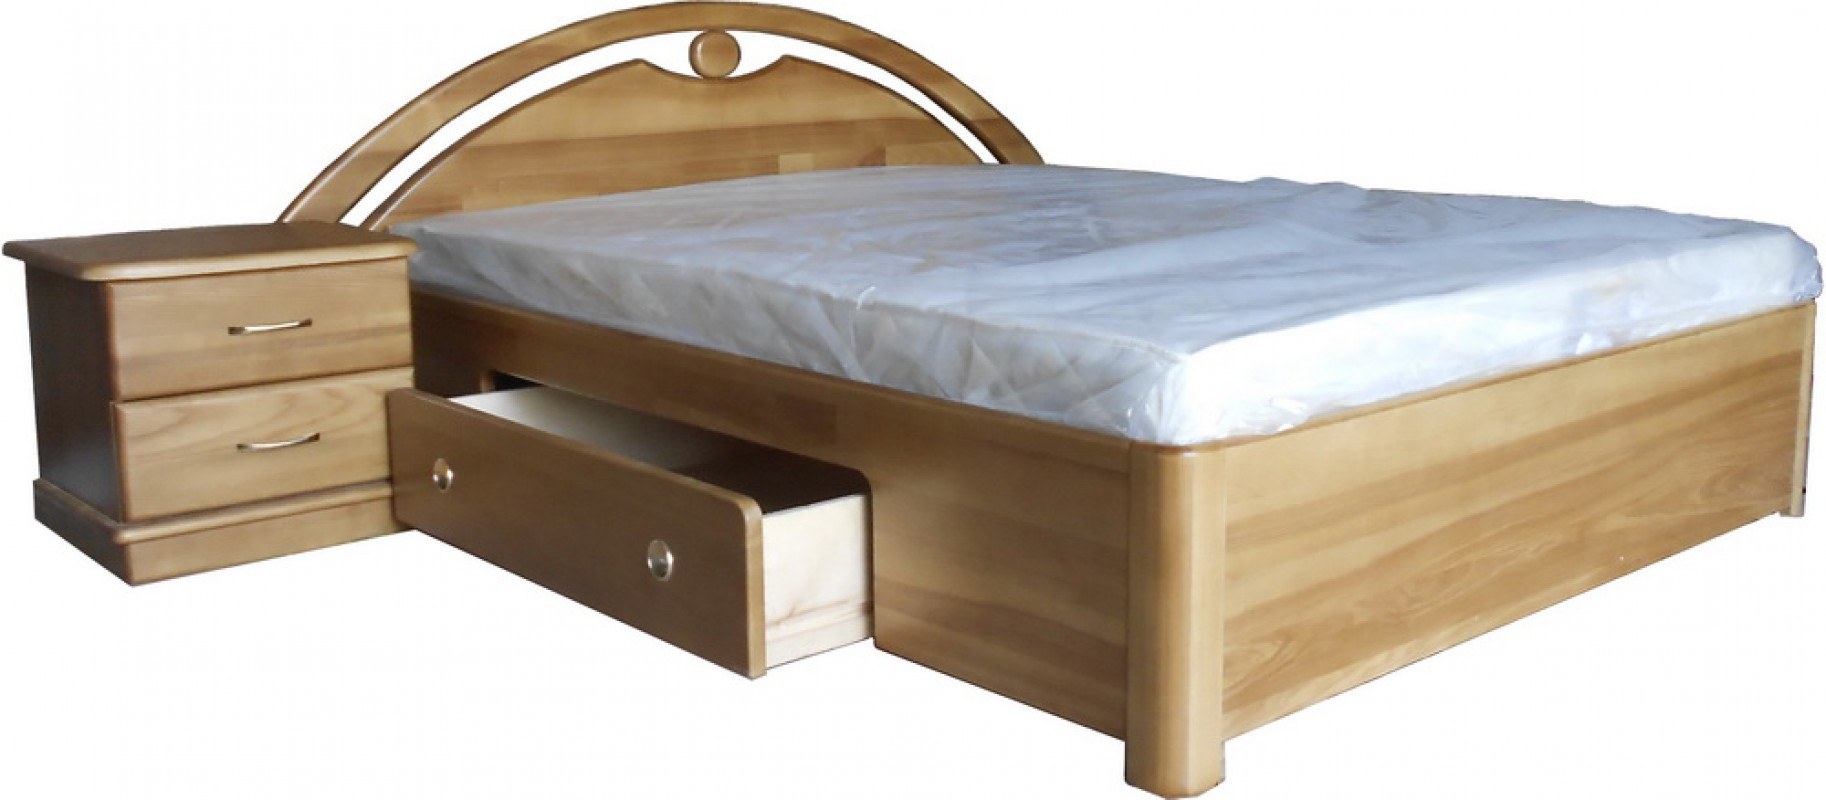 Двуспальные кровати из ясеня дуба и бука